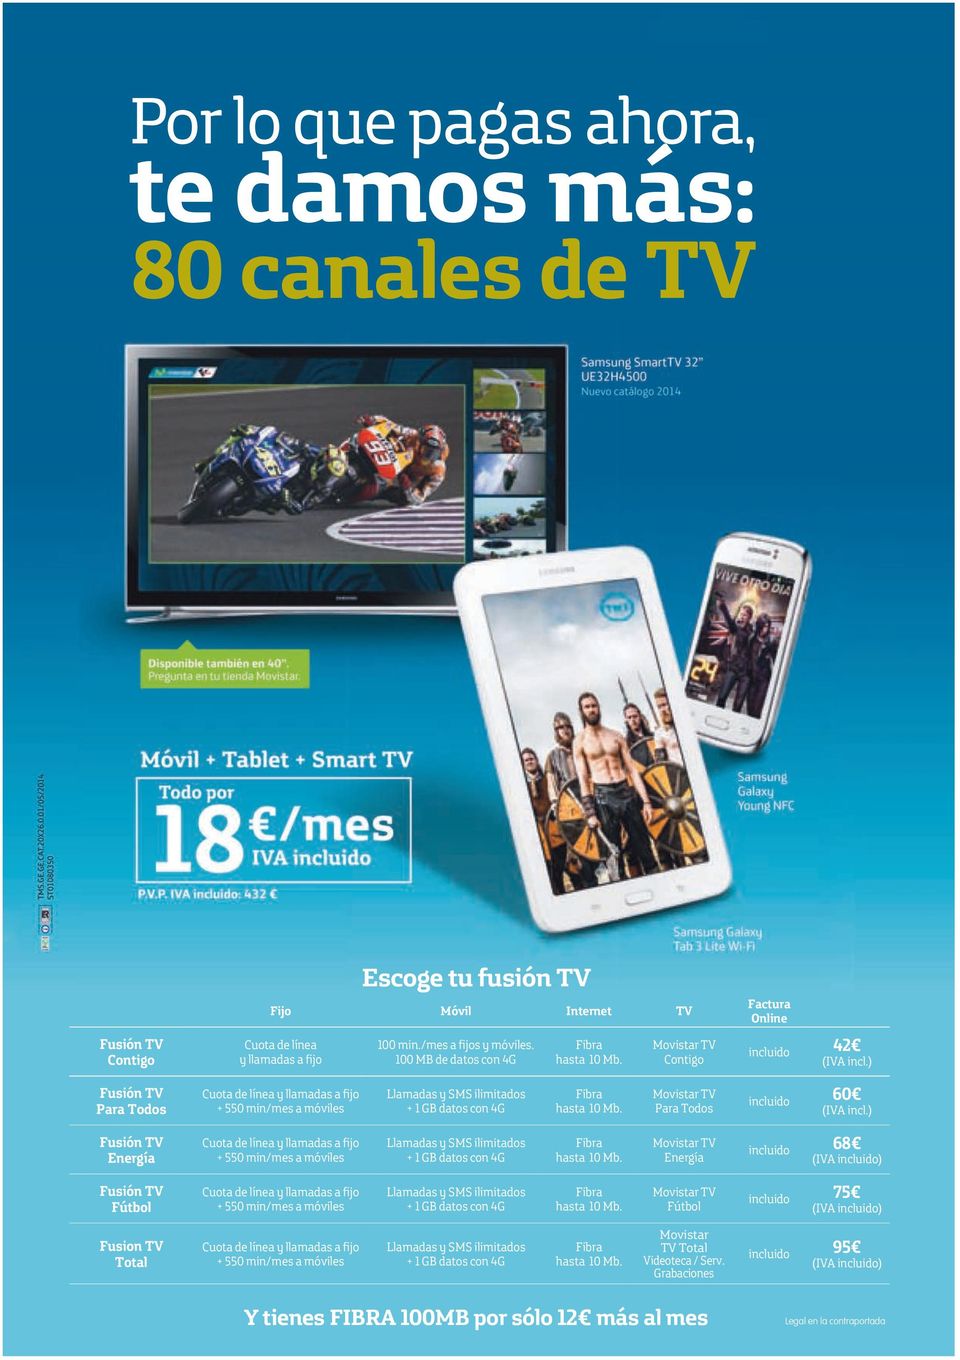 ) Fusión TV Para Todos Cuota de línea y llamadas a fijo + 0 min/mes a móviles Llamadas y SMS ilimitados + 1 GB datos con Movistar TV Para Todos 60 (IVA incl.